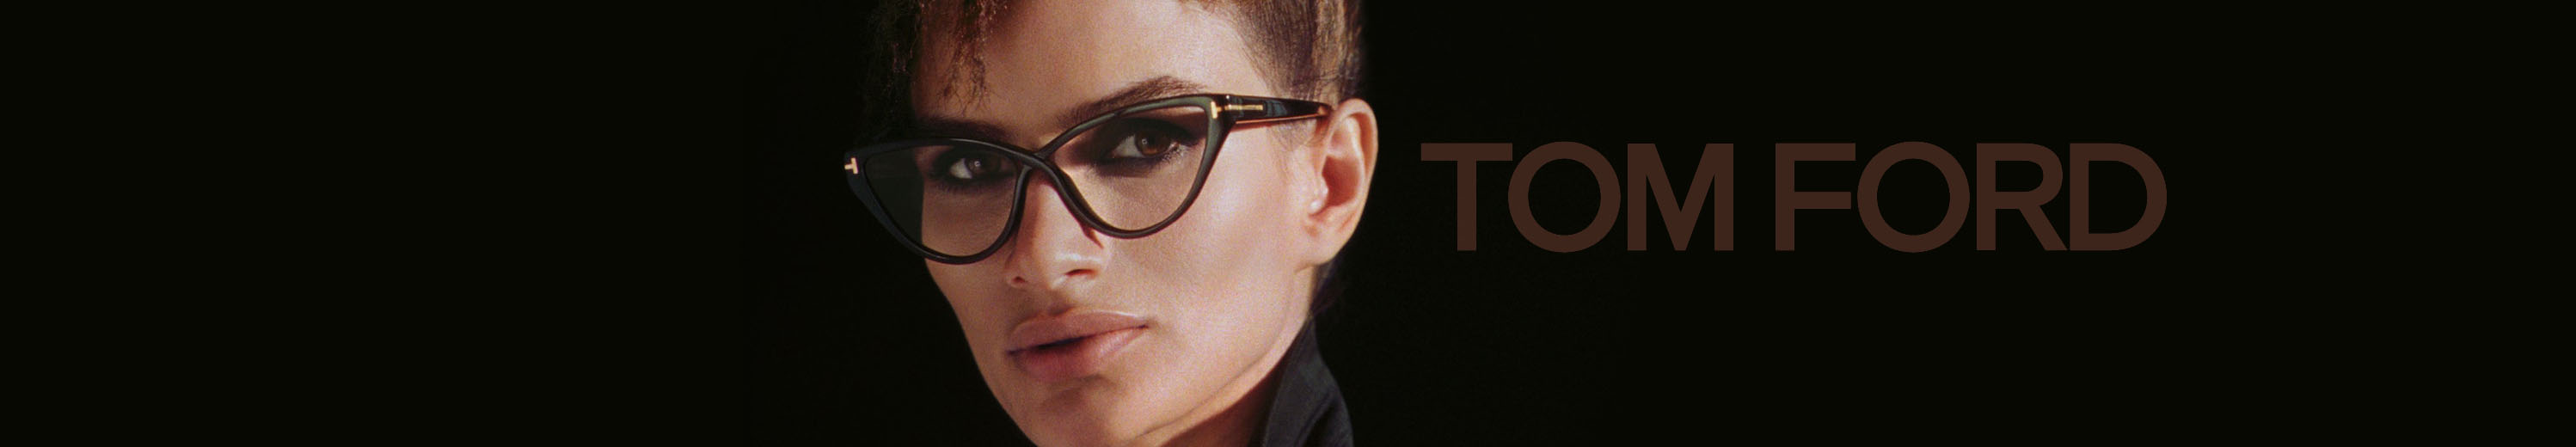 Tom Ford™ Women's Eyeglasses 